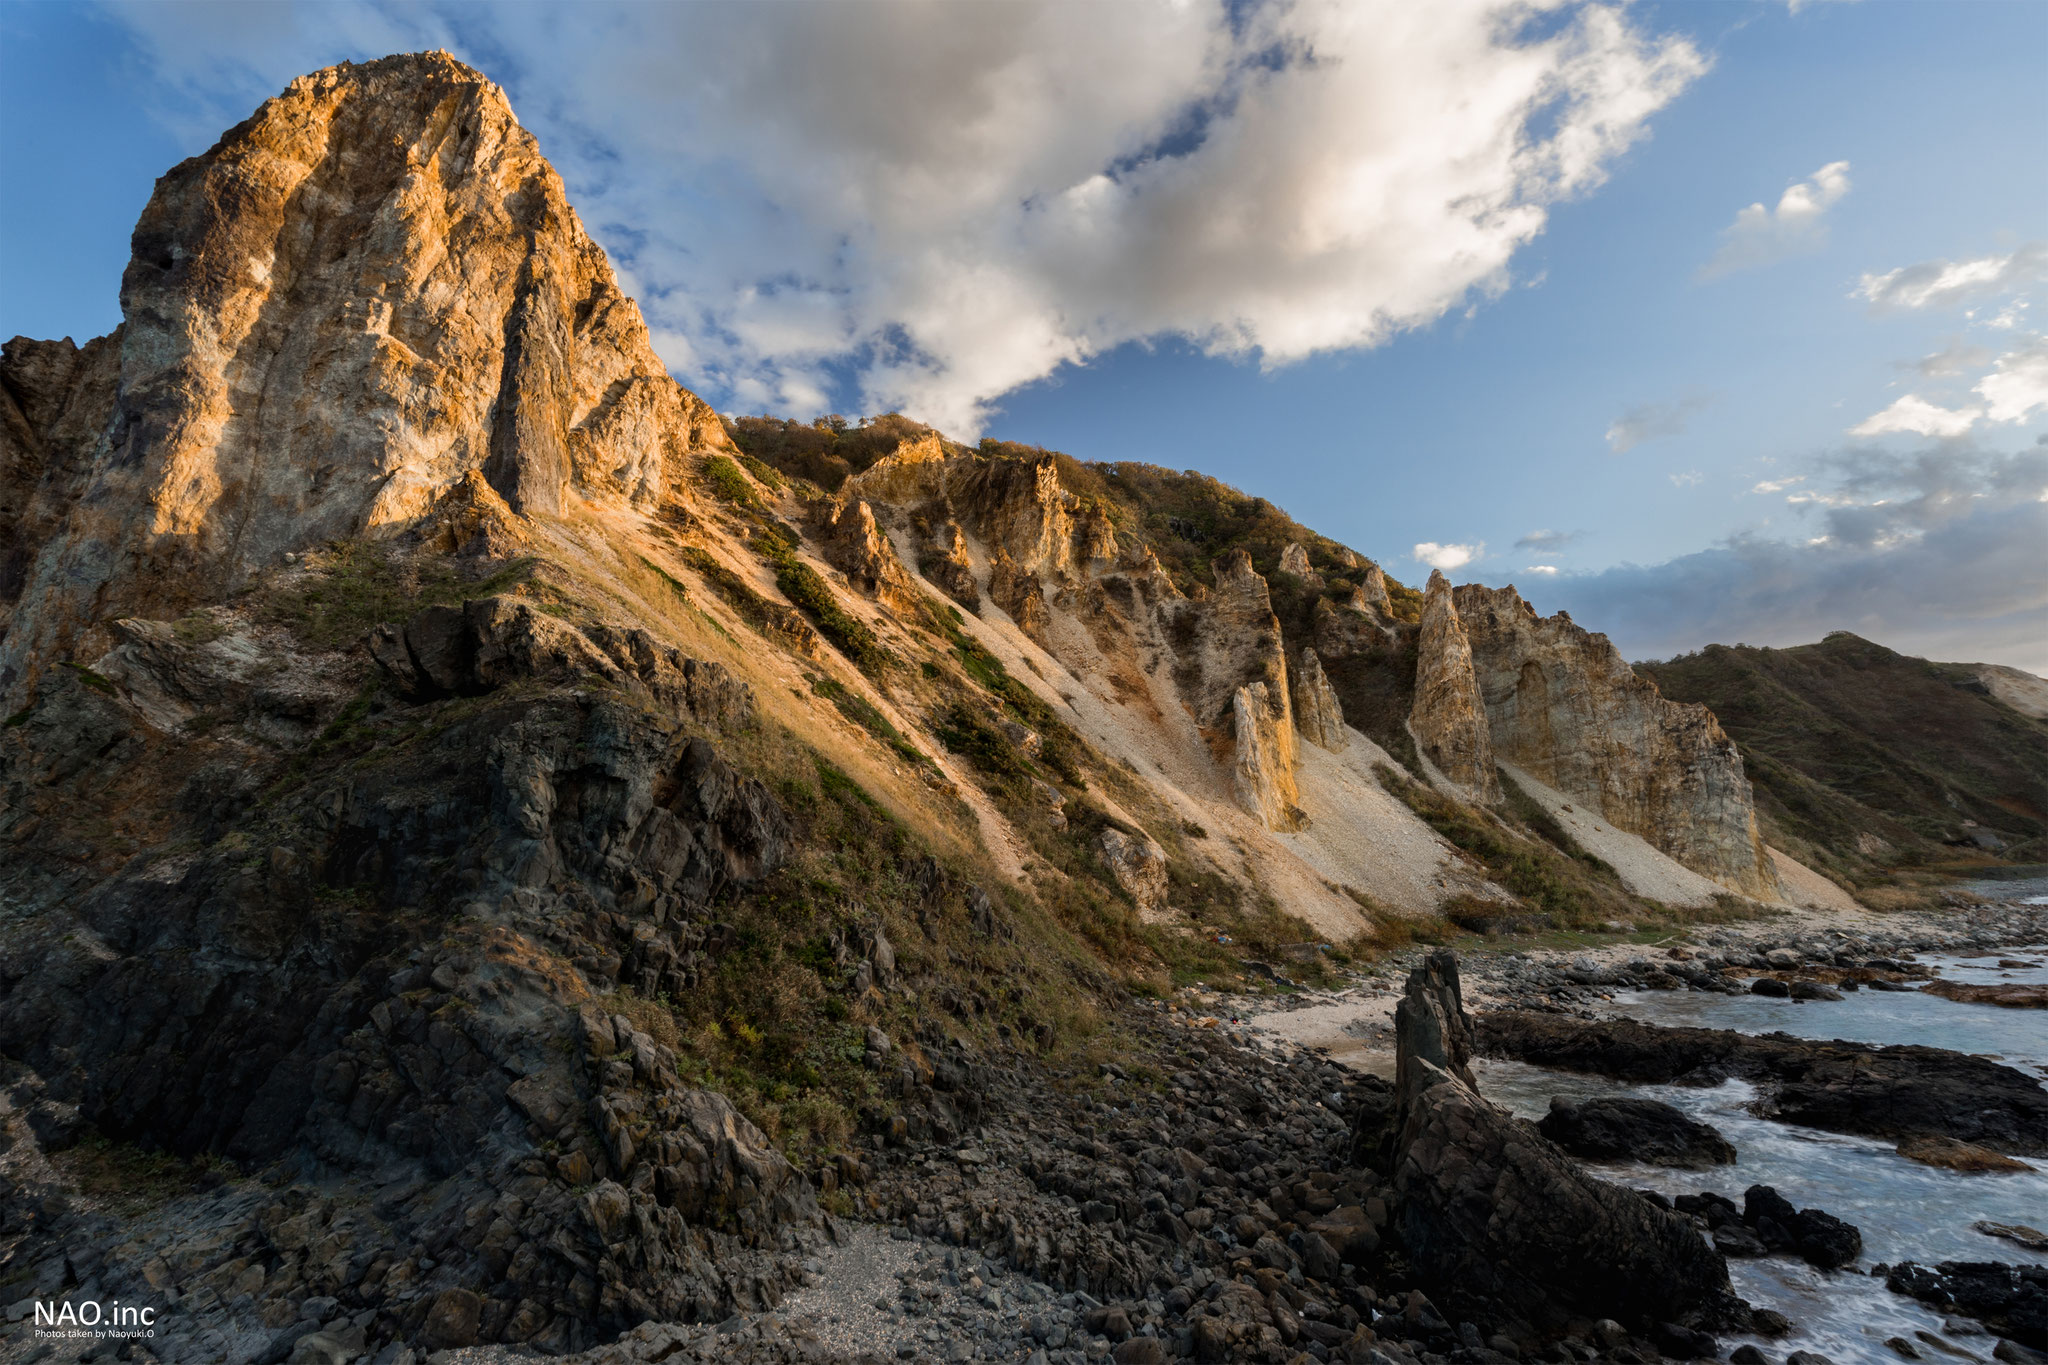 積丹町島武意海岸。日本渚百選に選ばれる海岸だが、岩場の迫力が凄まじい。